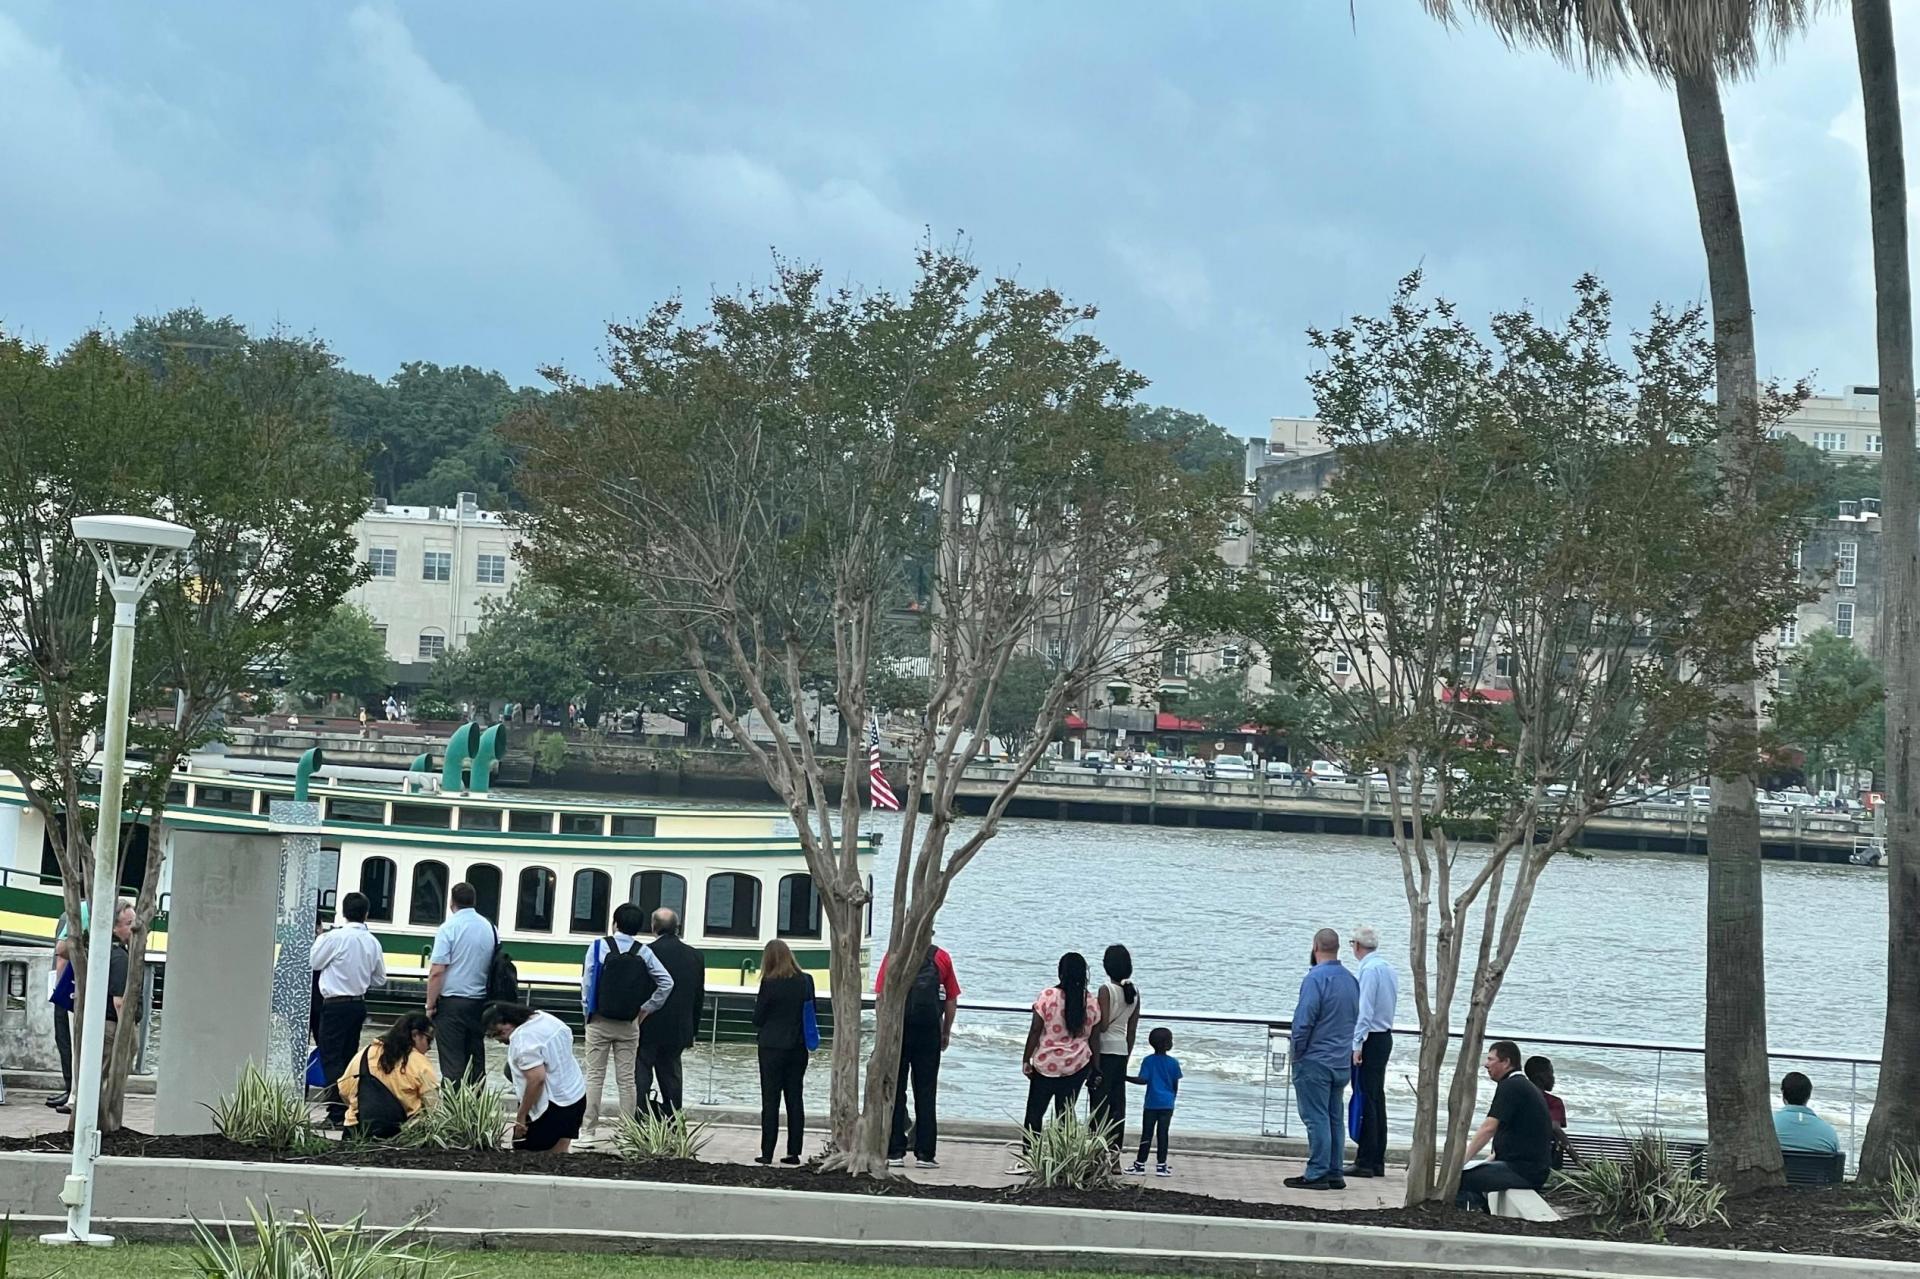 Water Taxi to Historic Savannah